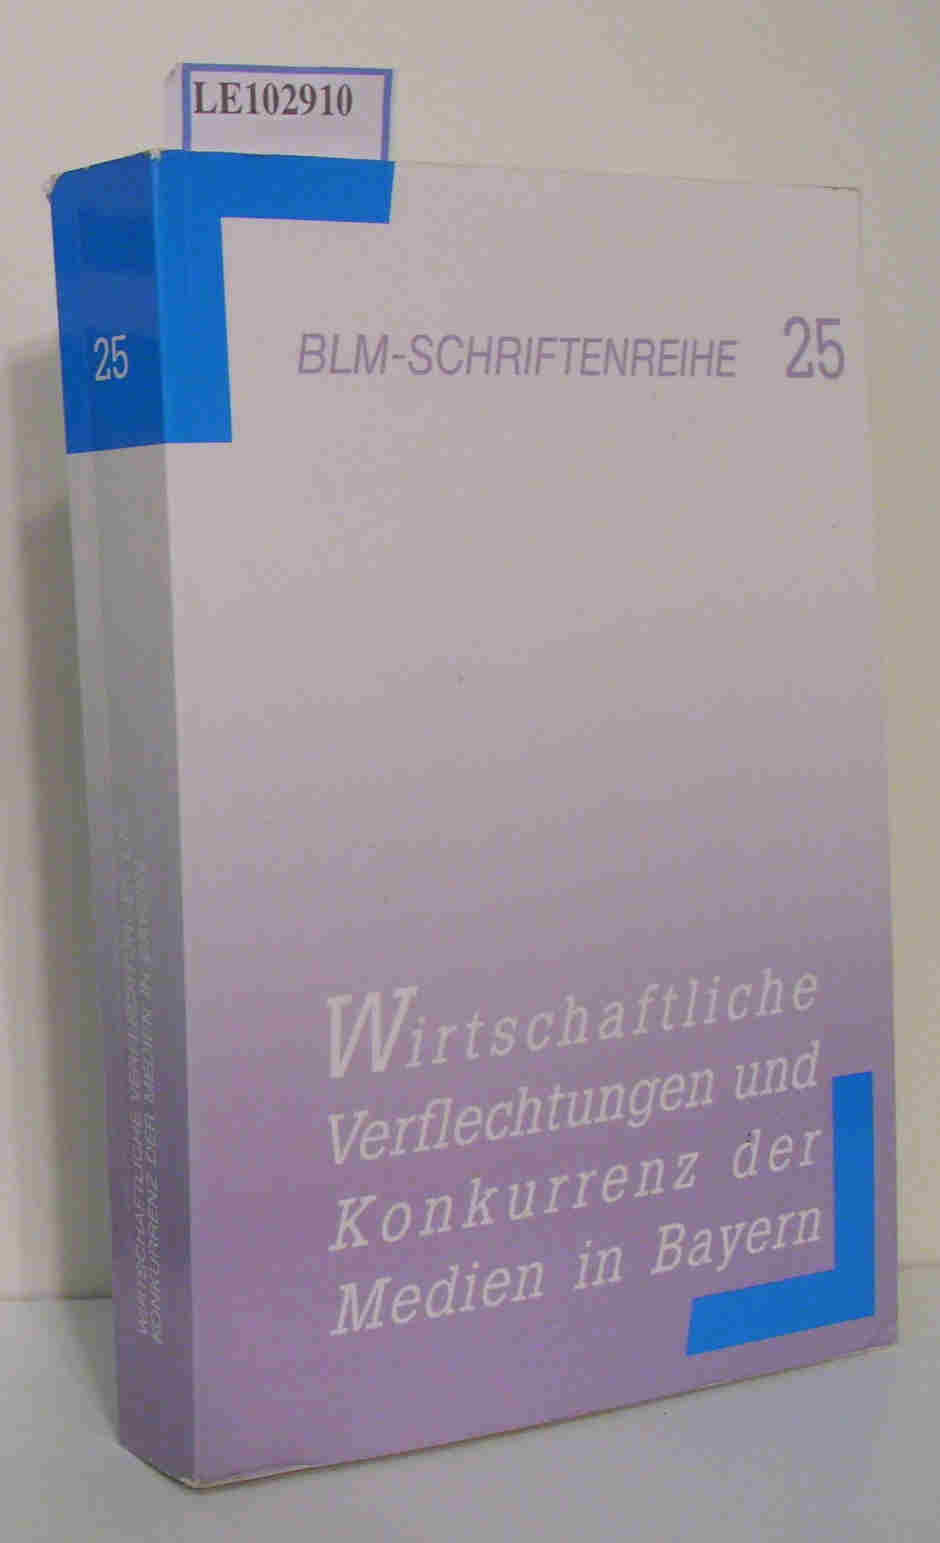 Wirtschaftliche Verflechtungen und Konkurrenz der Medien in Bayern BLM-Schriftenreihe 25 - Böckelmann, Frank